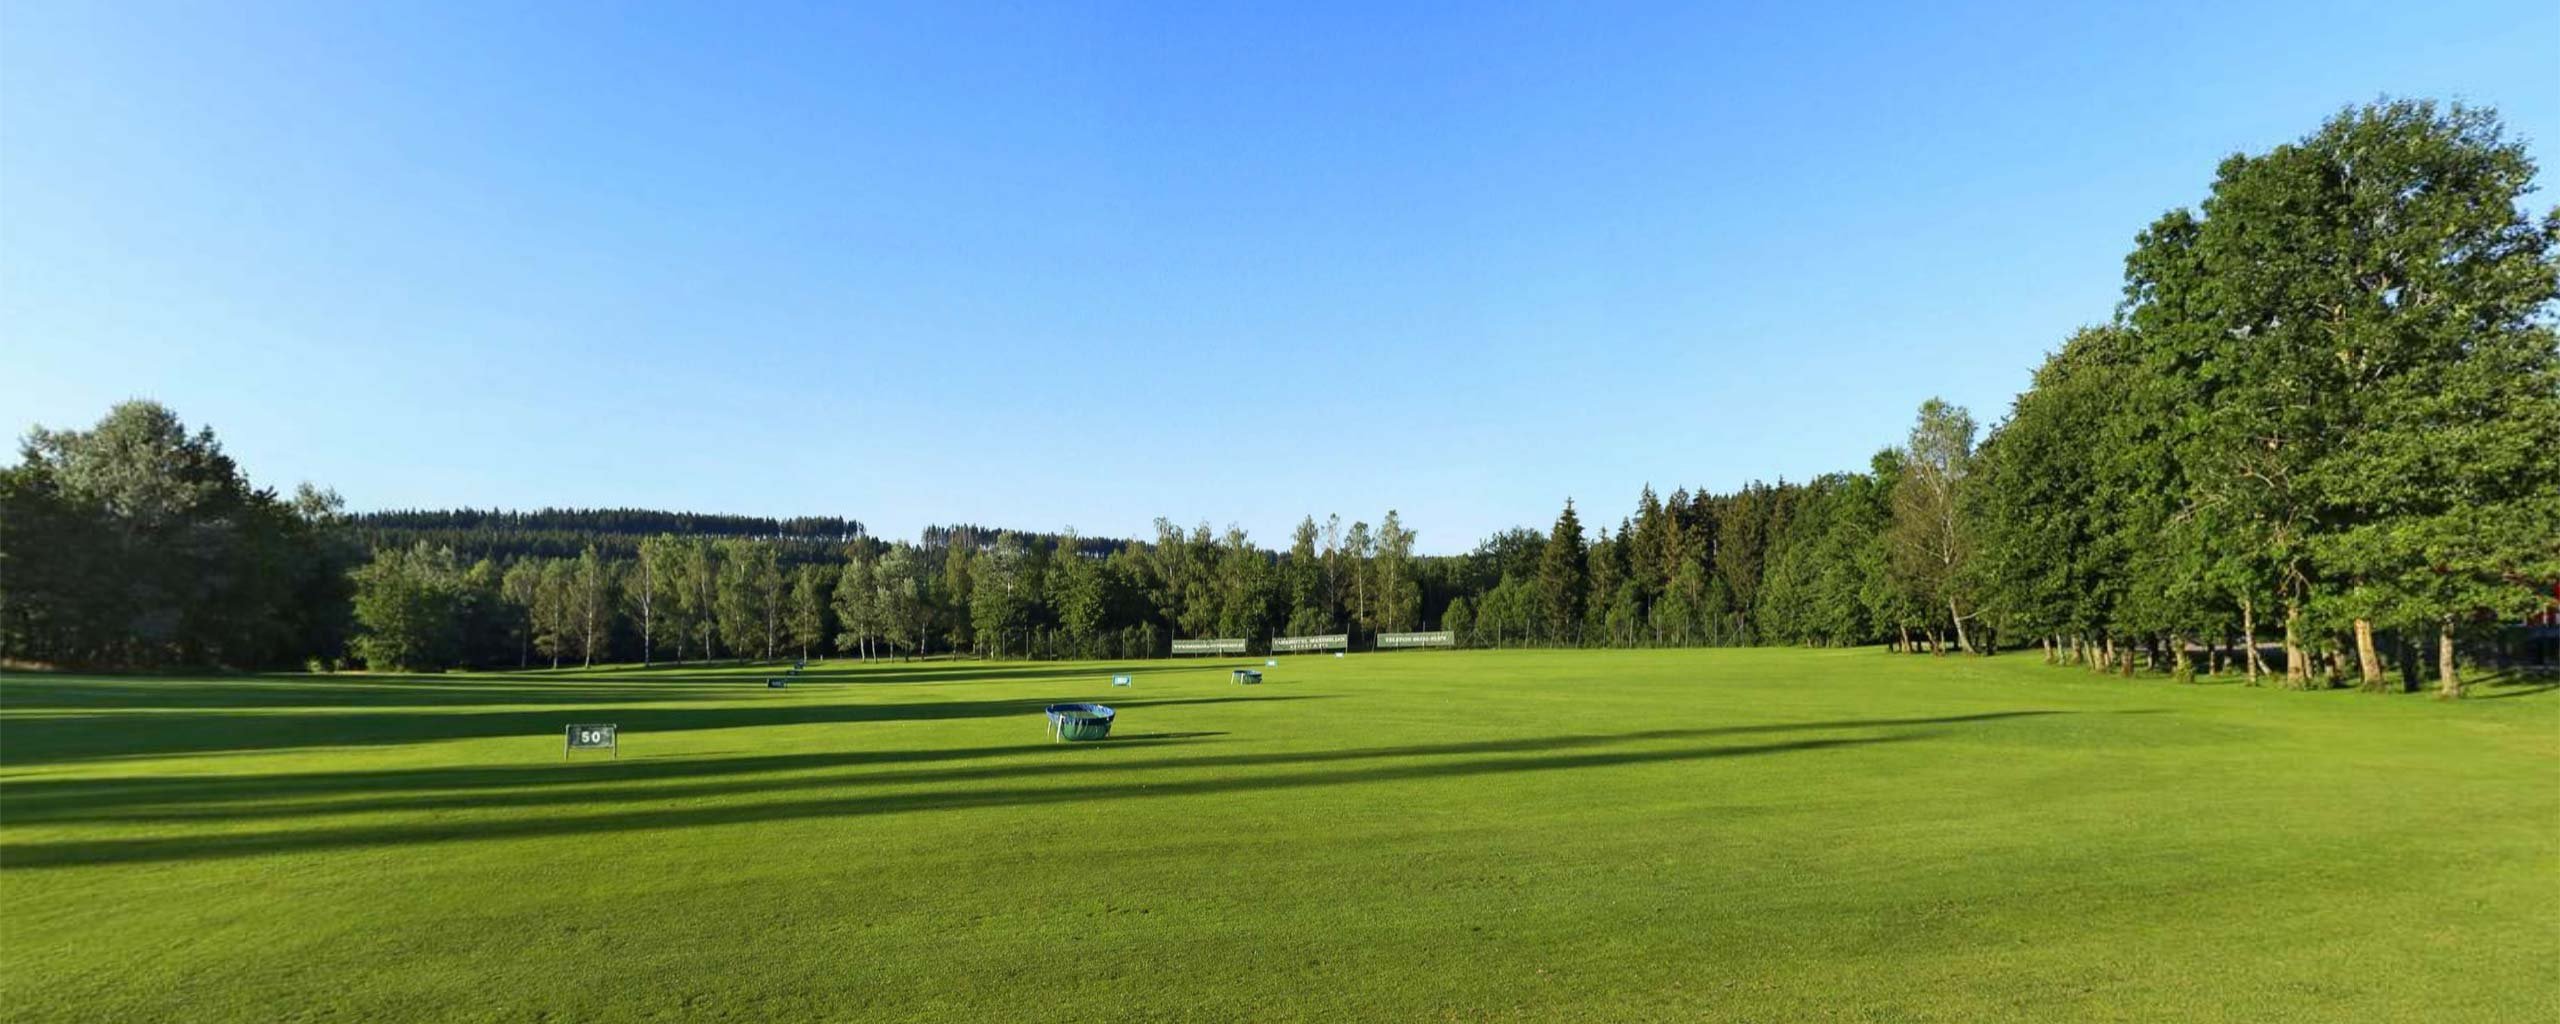 Das Green der Driving-Range des Allgäuer Golf- und Landclub e.V. aus Sicht des Abschlagpunkts als Vorschau der 360°-Ansicht der Driving Range